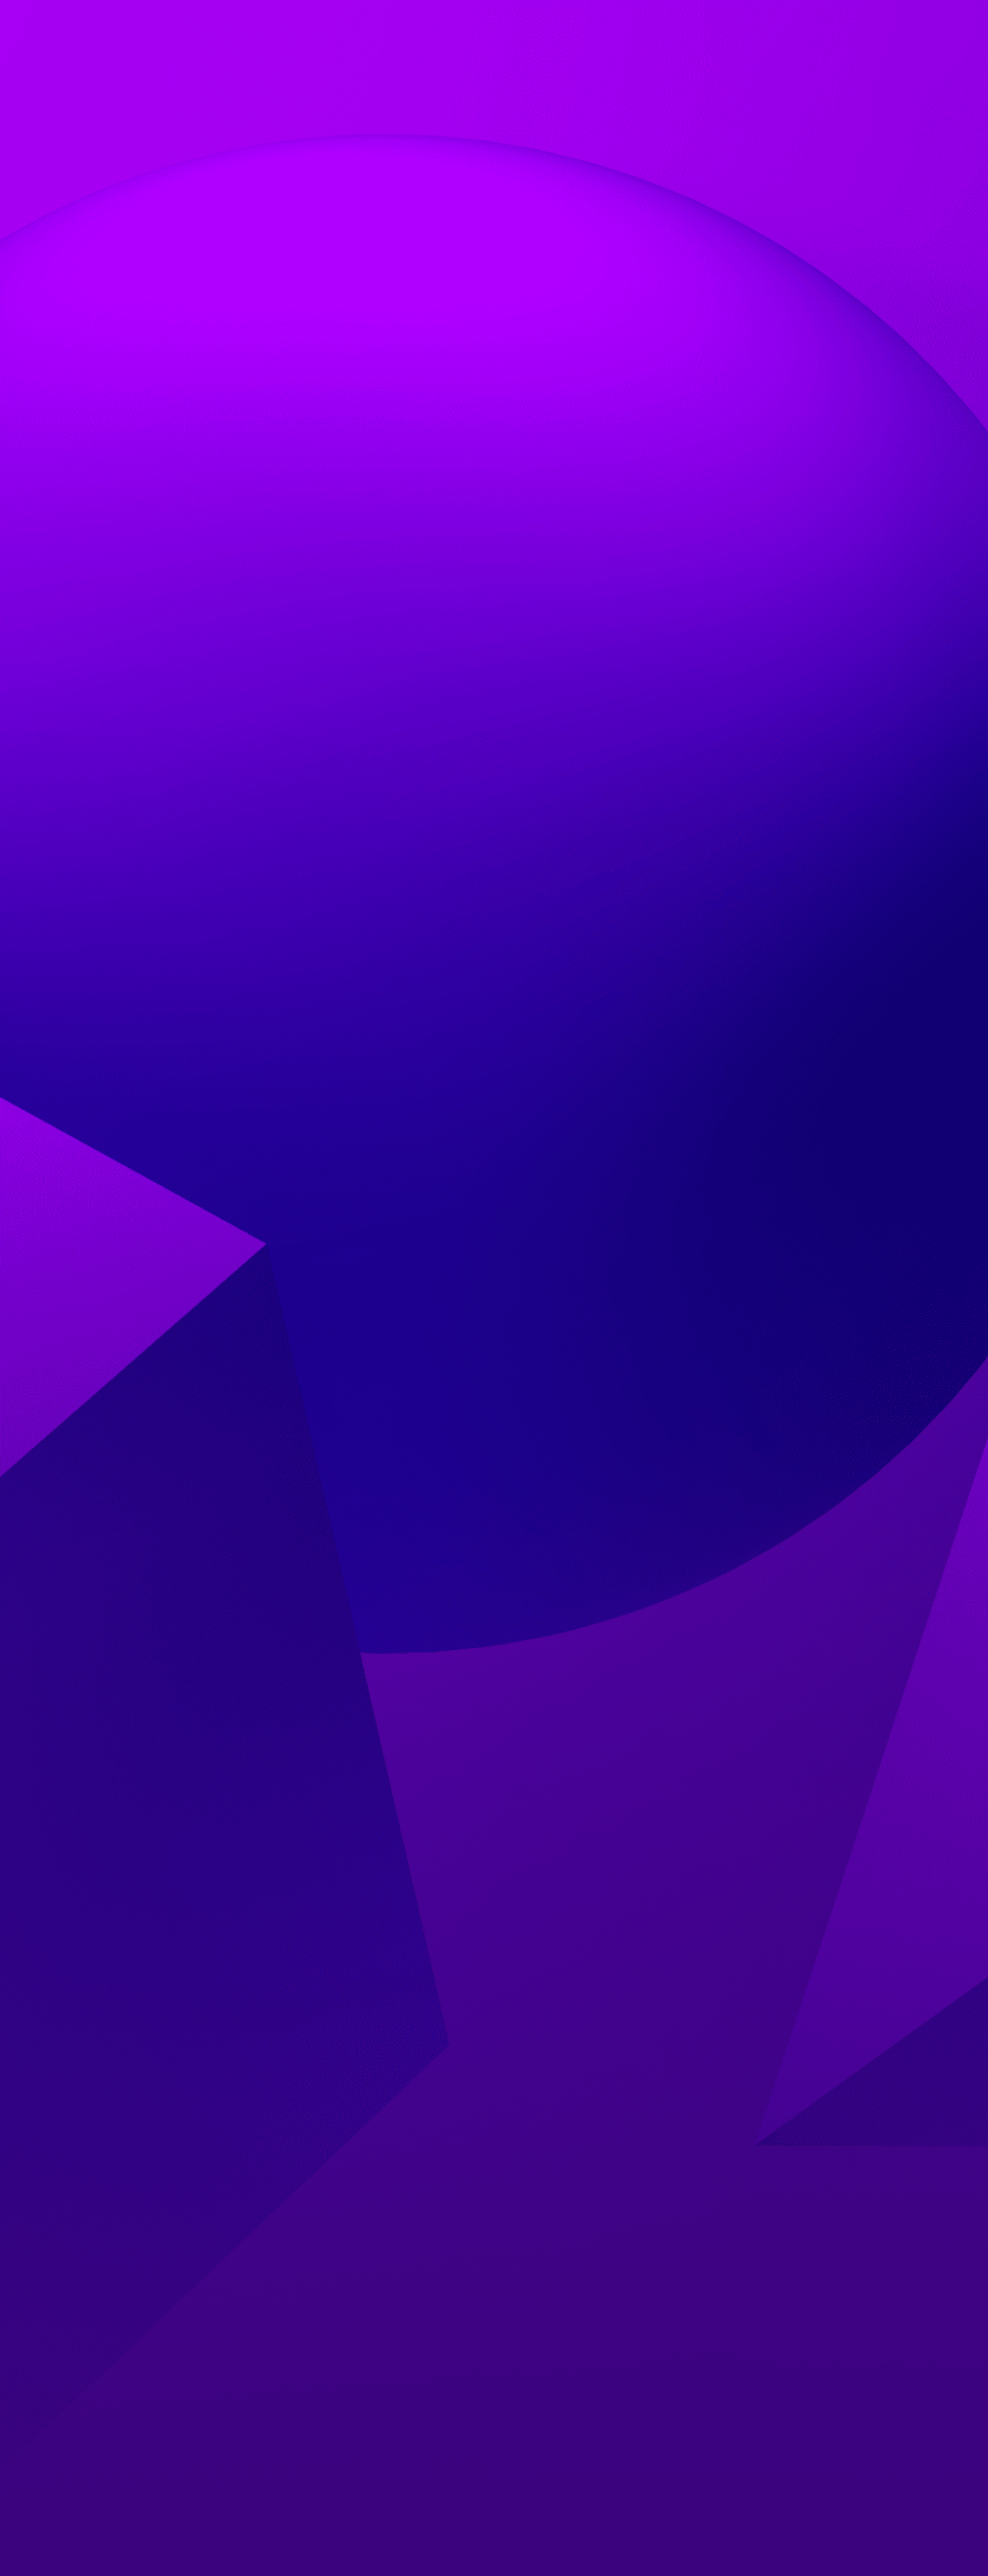 Một nền màu tím kết cấu với 3 hình - một hình cầu, hình nón và một khối lập phương